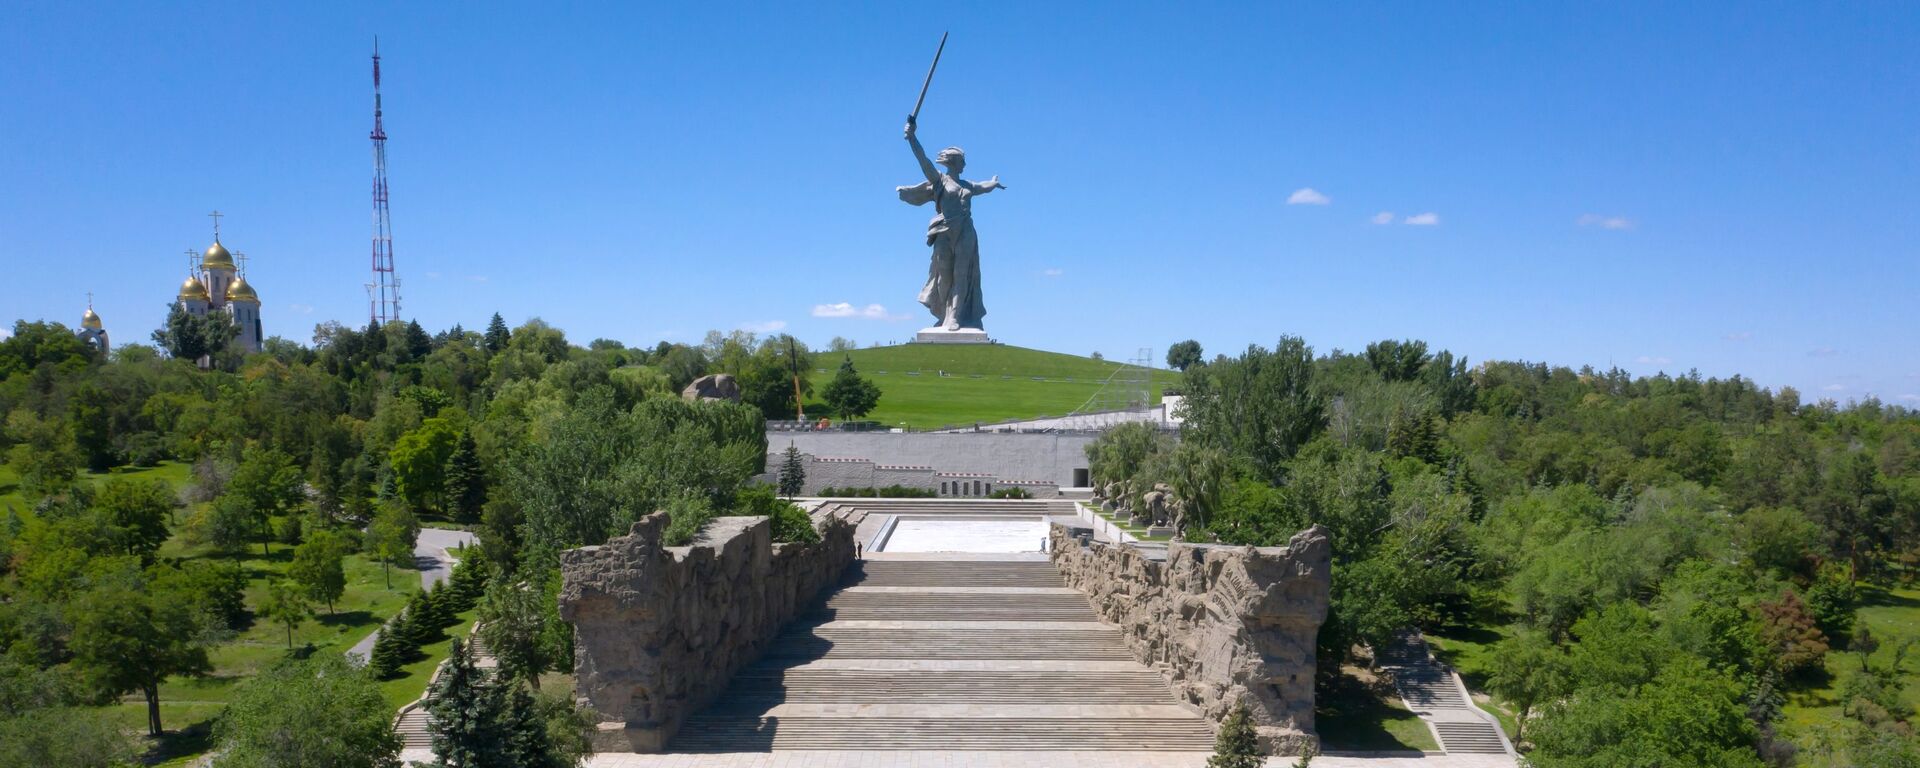 Монумент Родина-мать зовет! на Мамаевом кургане в Волгограде после реставрации - Sputnik Latvija, 1920, 09.05.2021